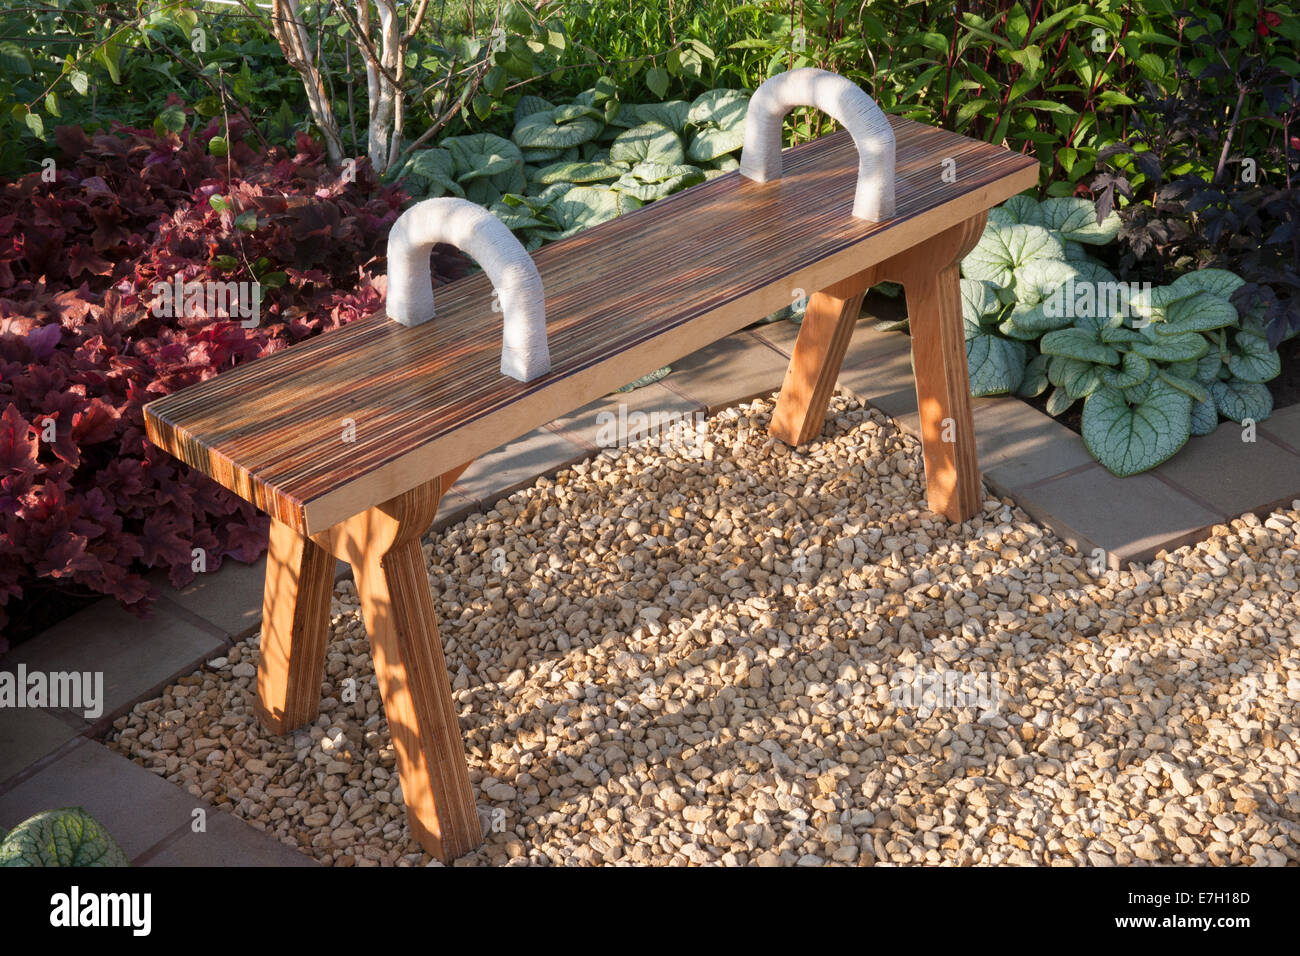 Jardin avec une banquette en bois coin salon sur un patio en gravier Royaume-Uni été Banque D'Images